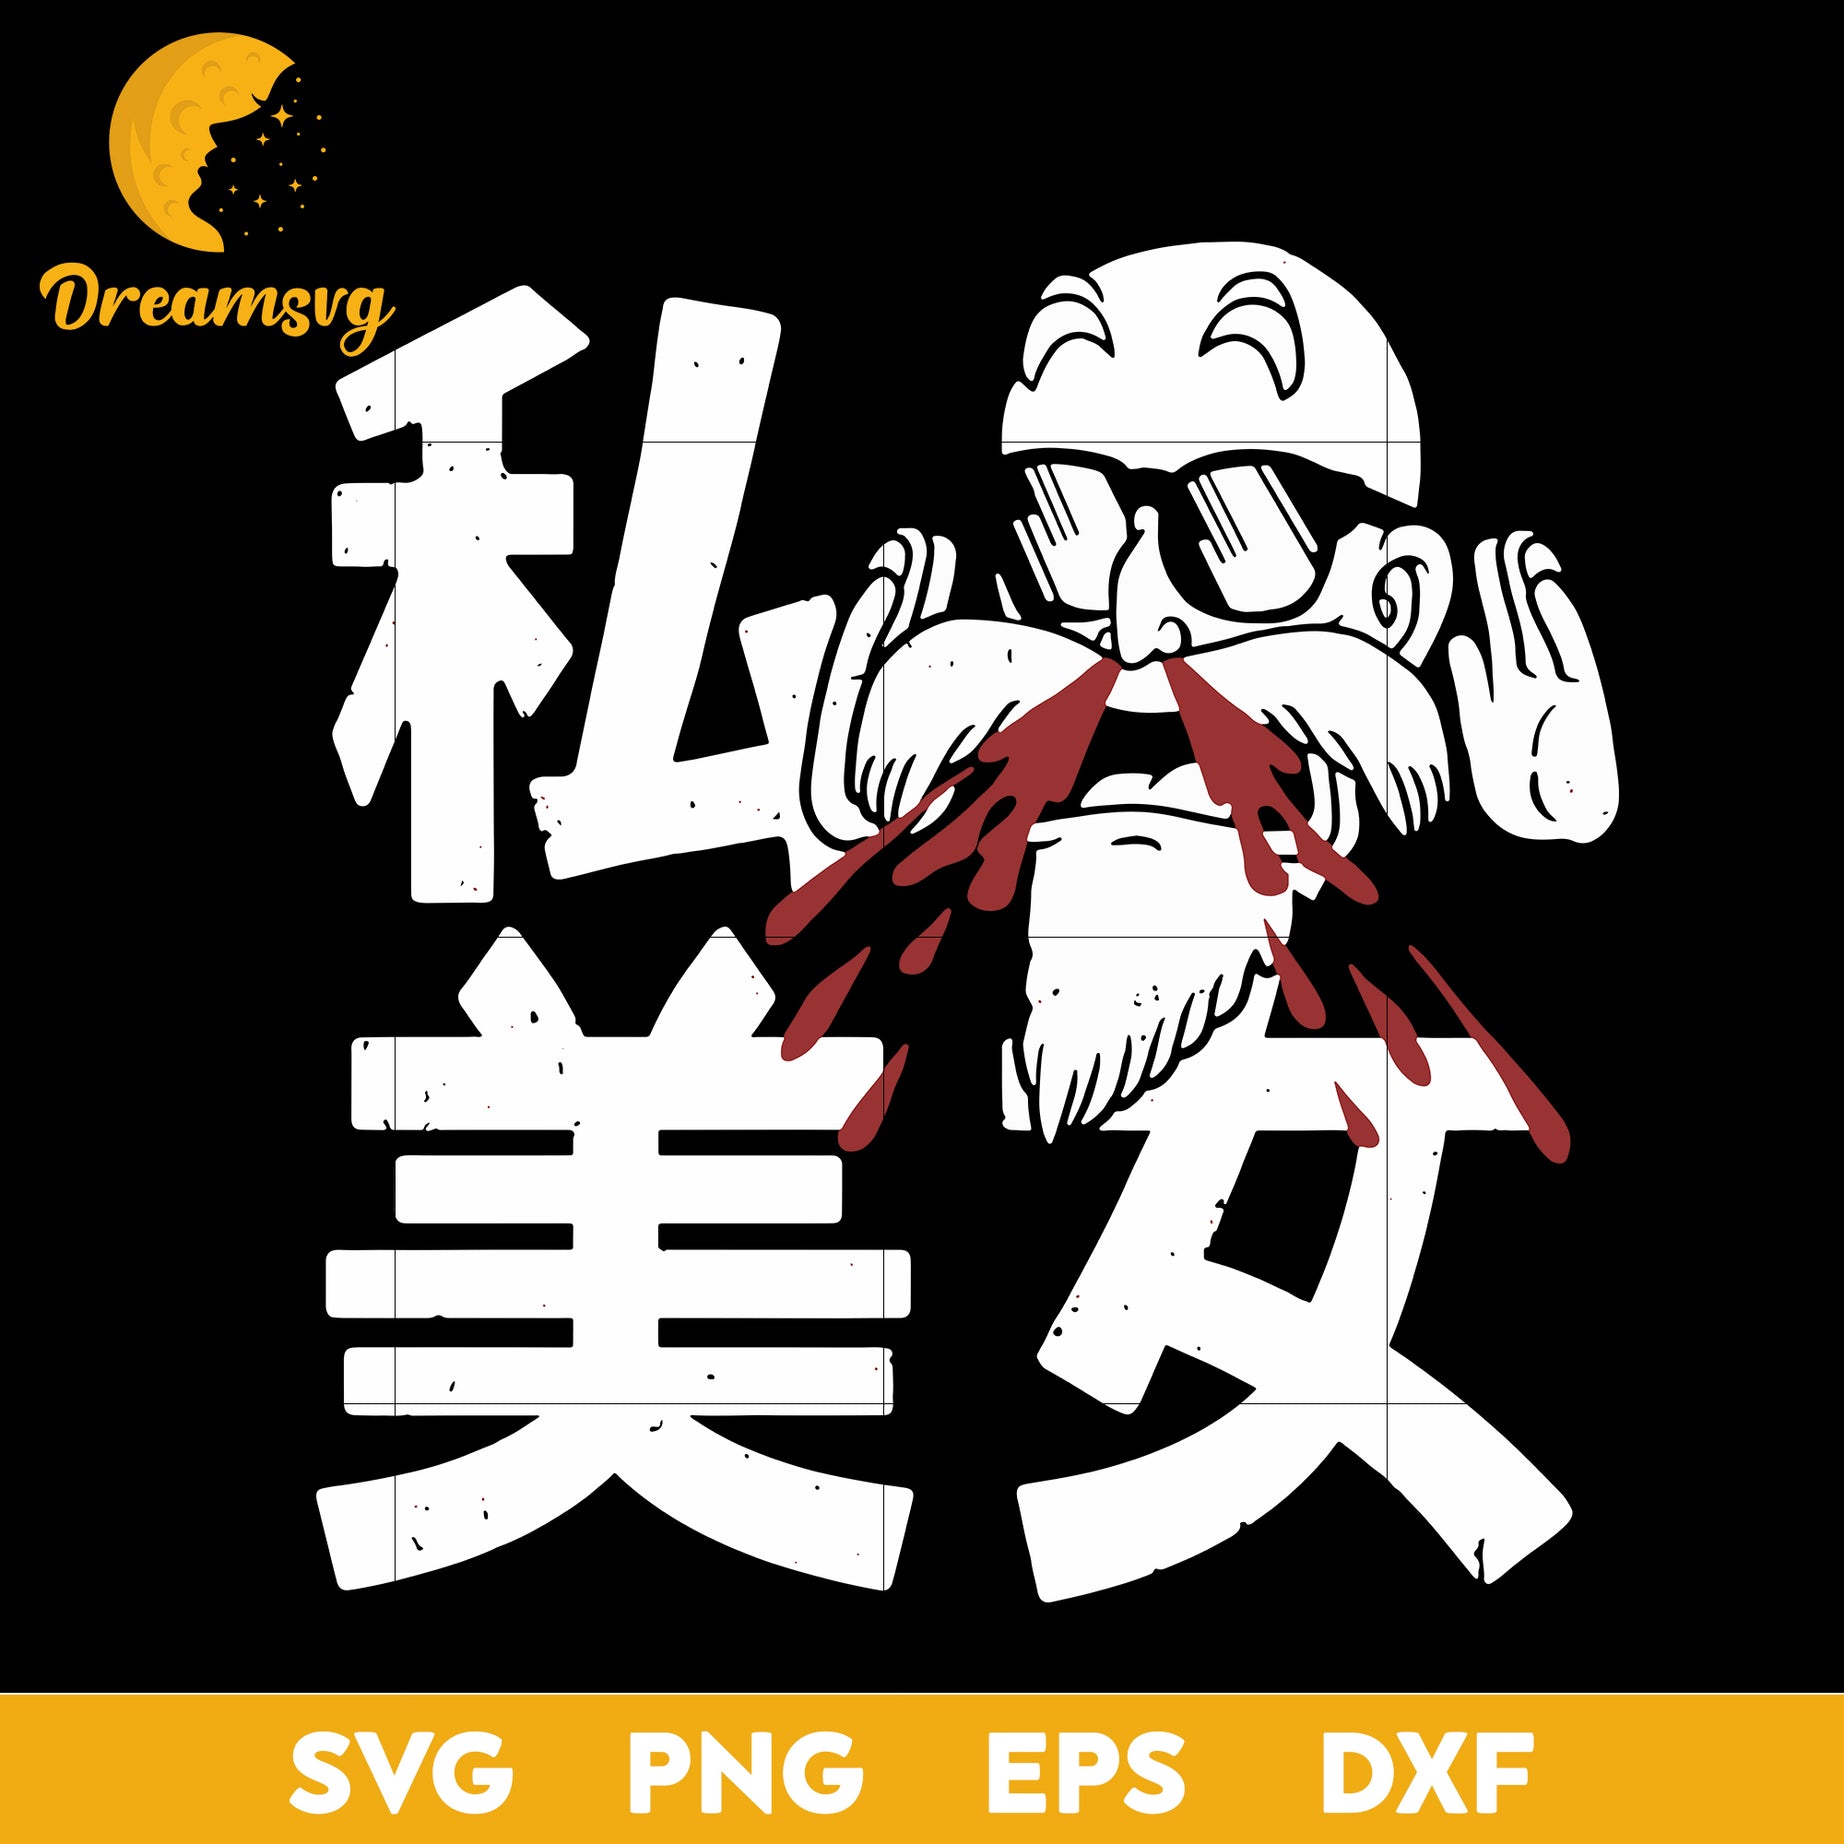 Master Roshi Svg, Dragon Ball Z Svg, Roshi Svg, Manga Svg, Japanese Anime Svg, Anime Svg, png, eps, dxf digital download.